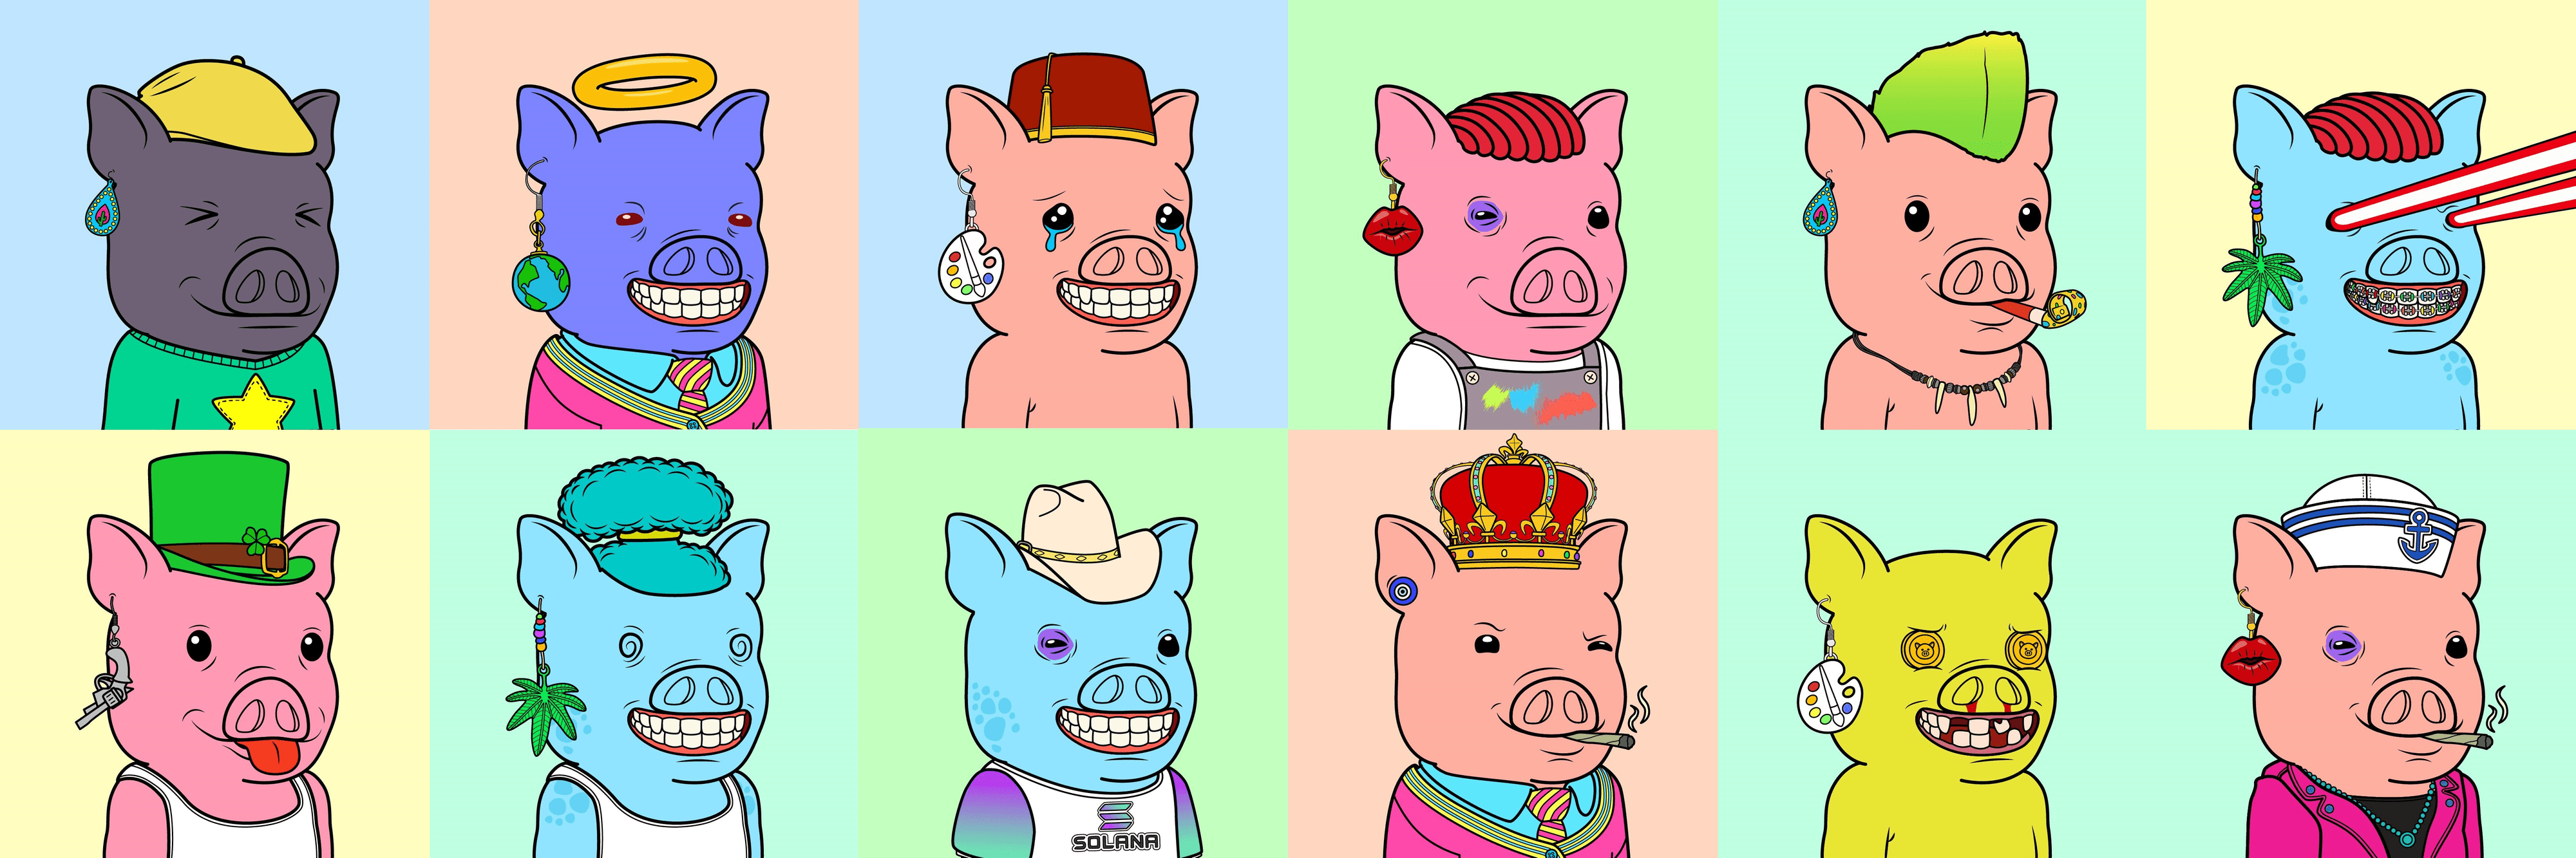 Piggy_Gang 横幅